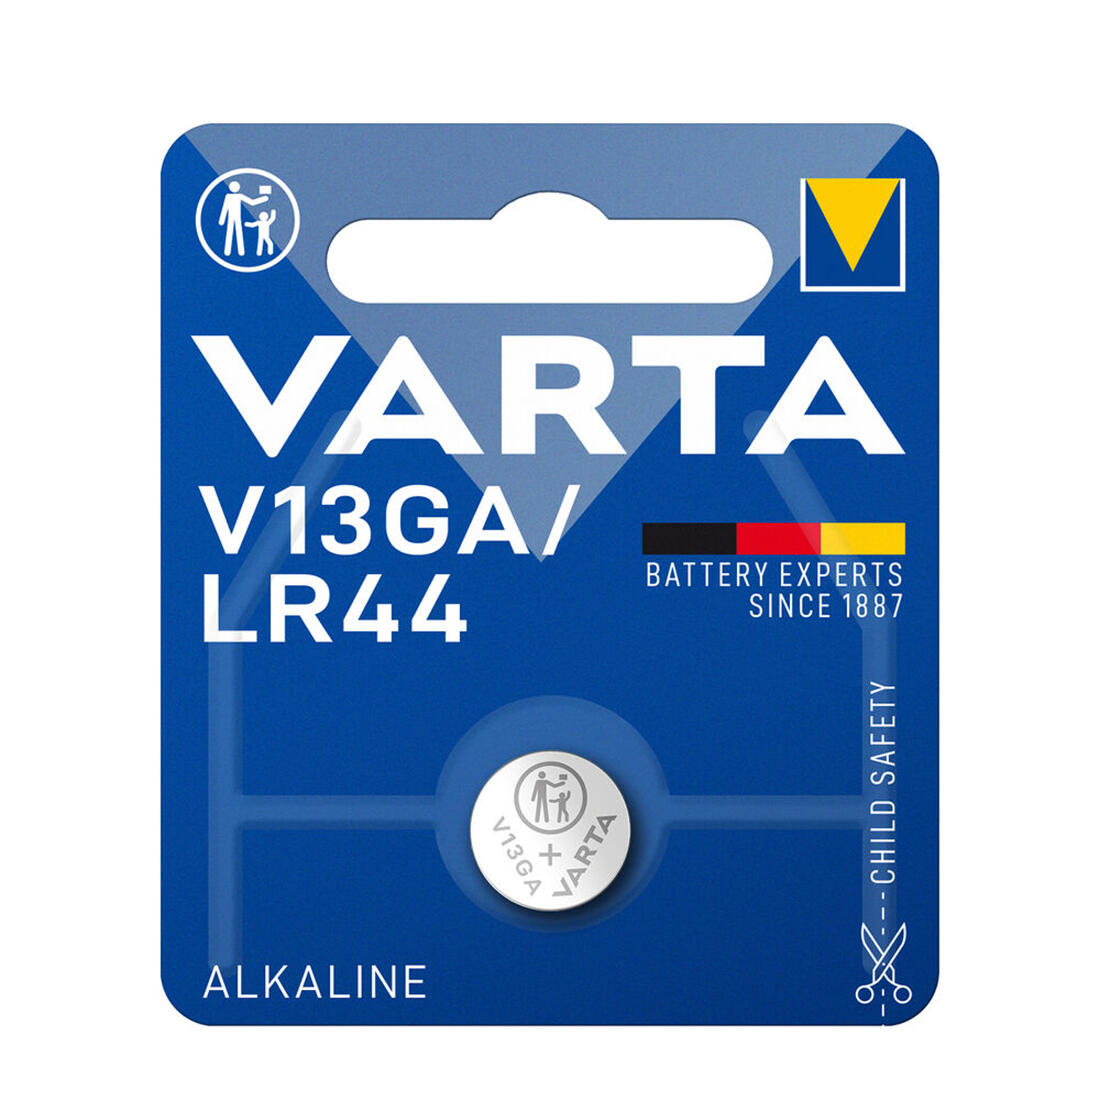 baterie knoflíková V13GA/LR44 alkalická VARTA 0.01 Kg MAXMIX Sklad14 129174 124